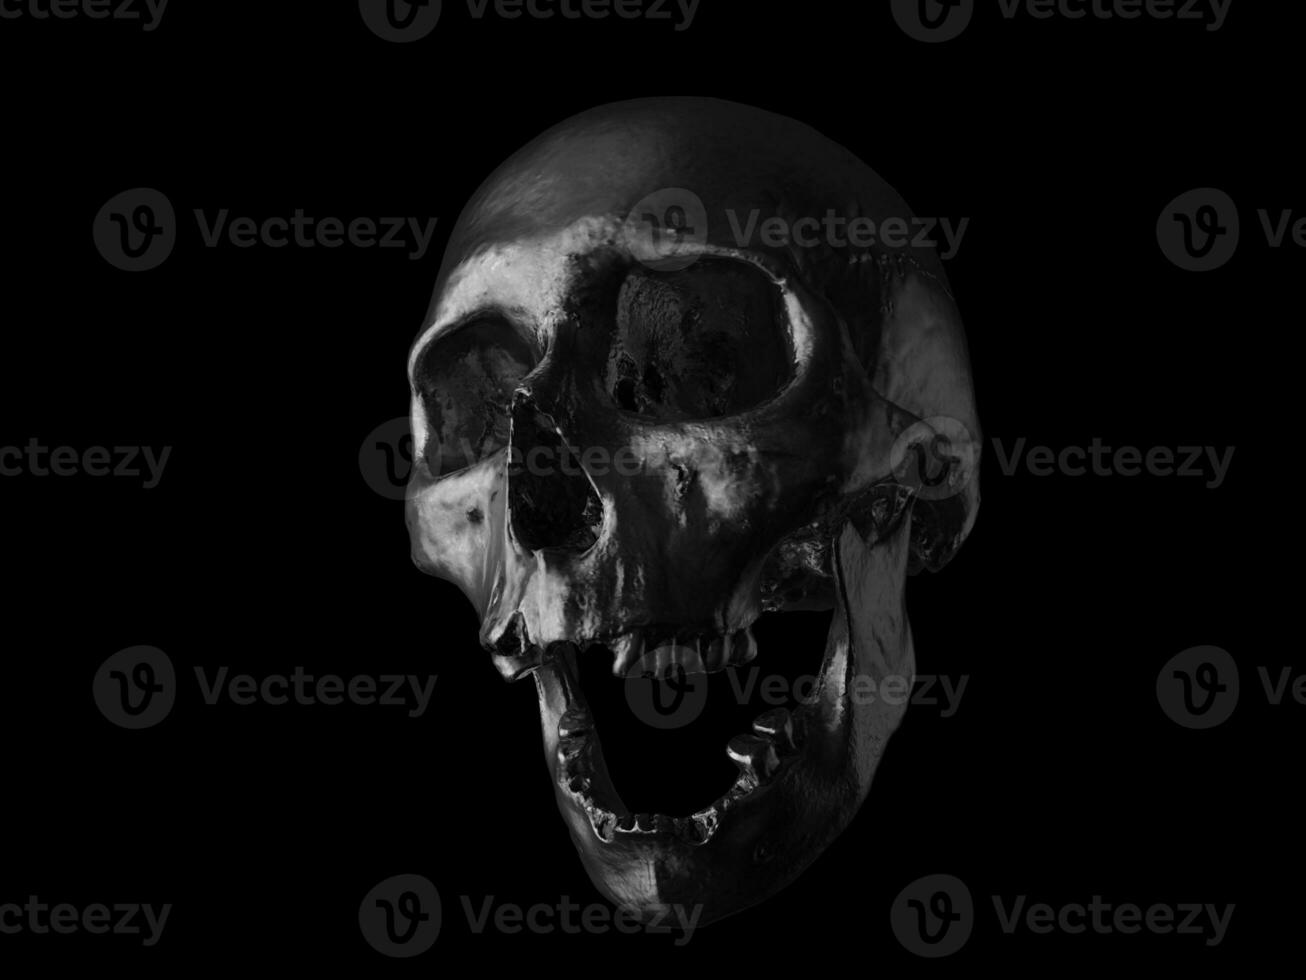 olie zwart menselijk schedel met Open kaak en missend tanden foto